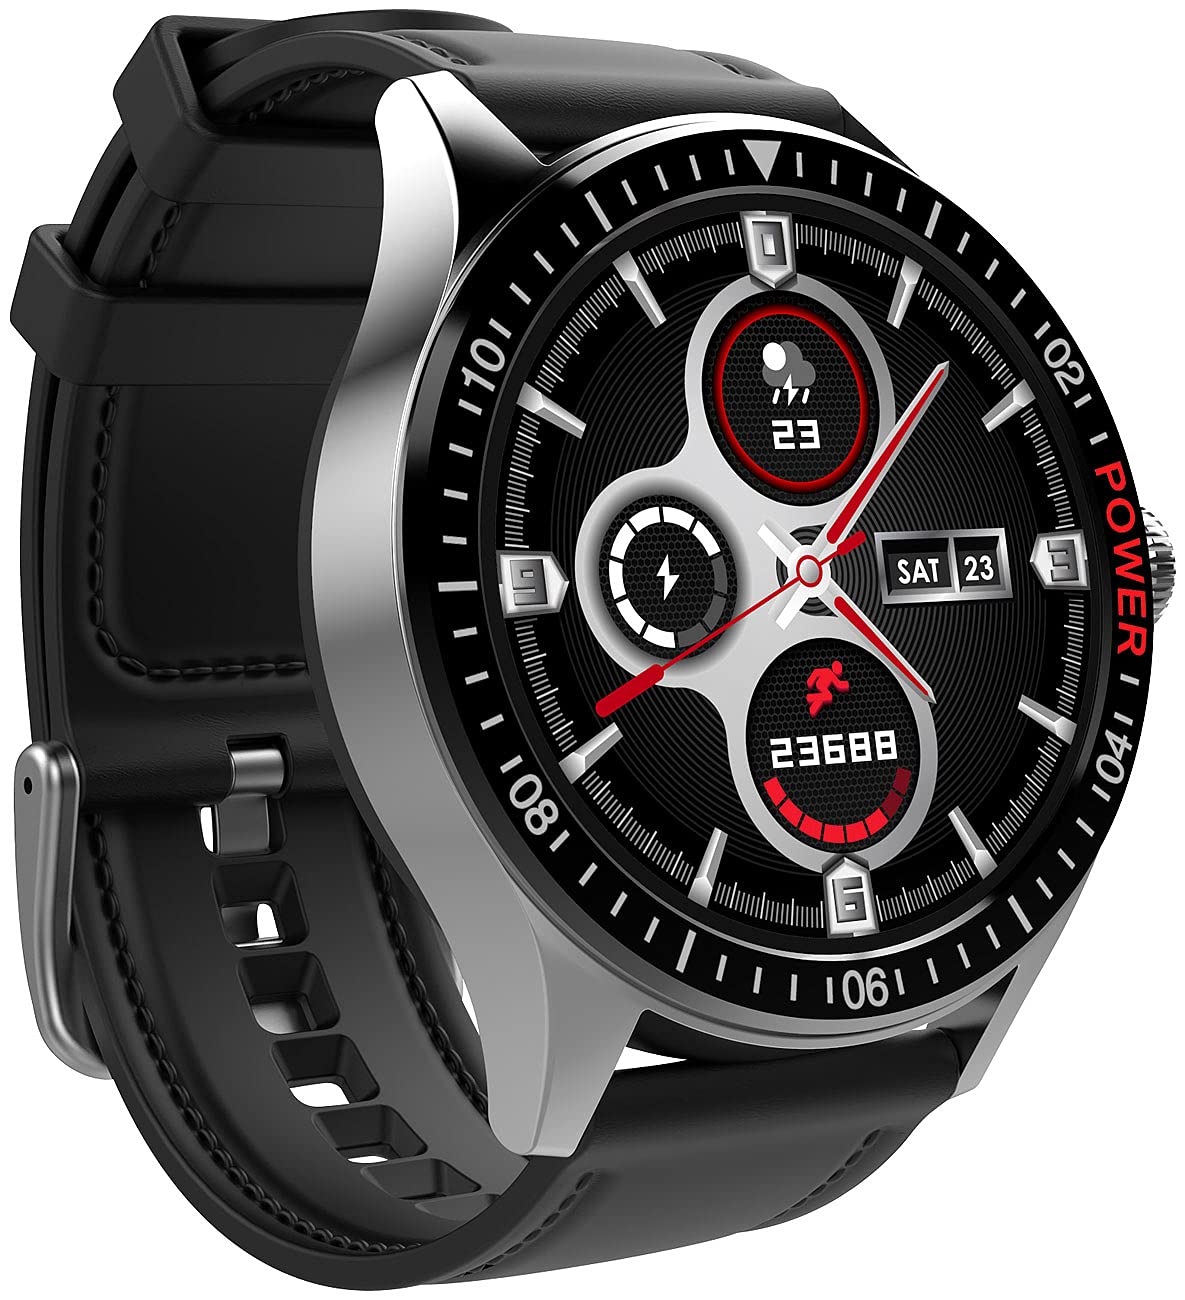 St. Leonhard Damen Smart Watch: Smartwatch mit Always-On-Display, Bluetooth, App, Herzfrequenz, IP68 (Handy Uhr)